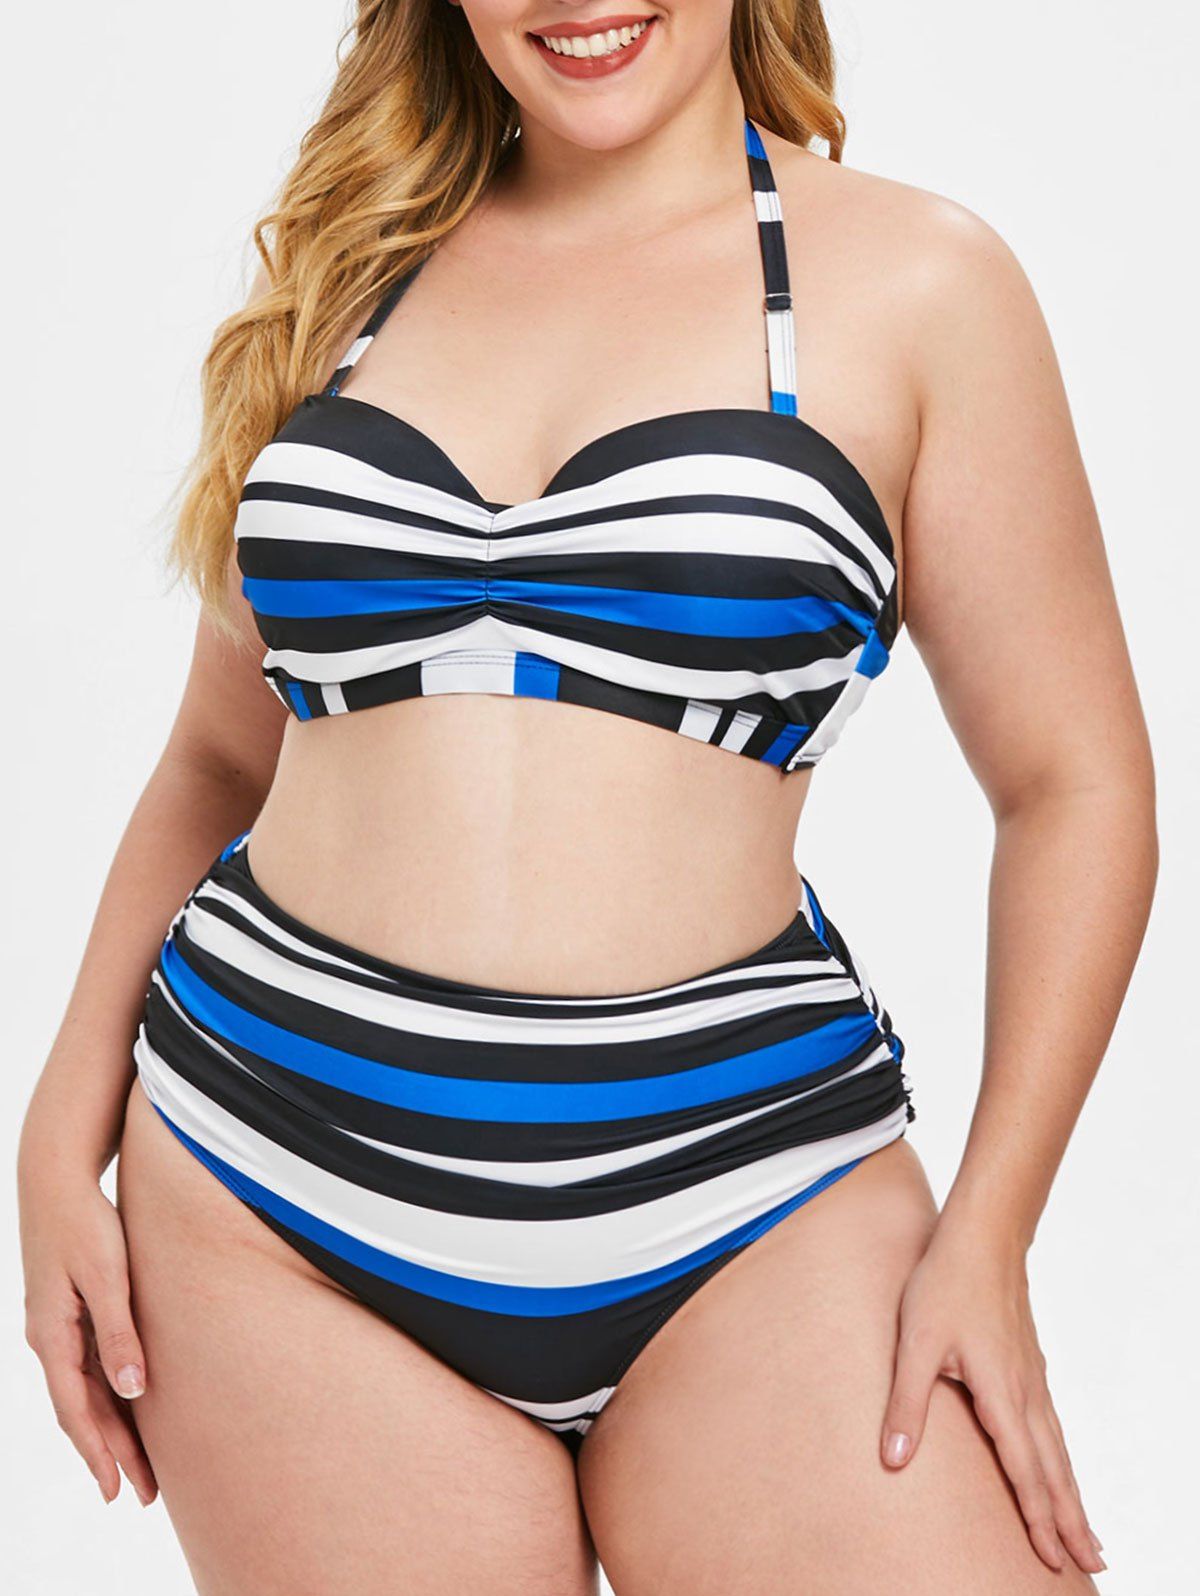 Plus Size Striped Panel Underwire Bikini Set - multicolor L